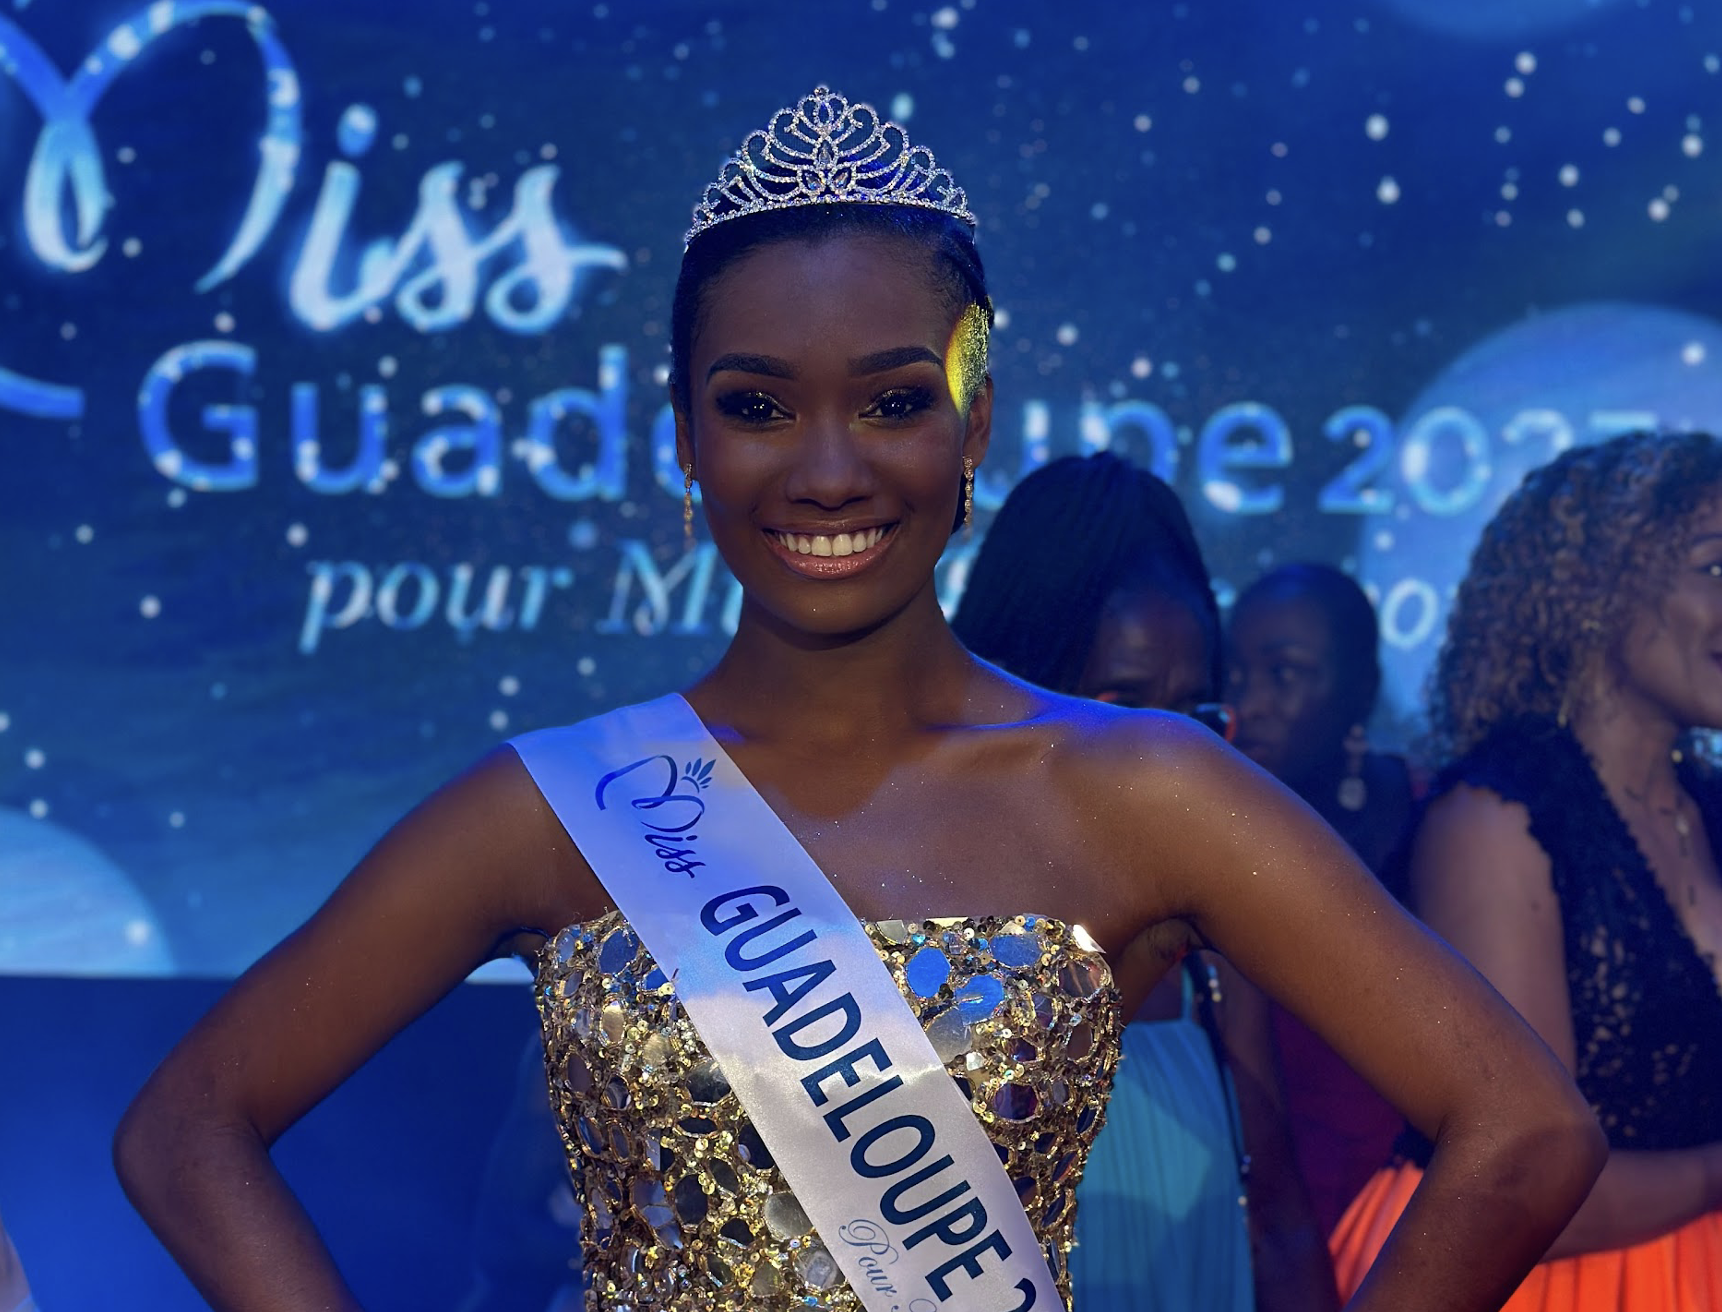     Jalylane Maës est la nouvelle Miss Guadeloupe 2023

